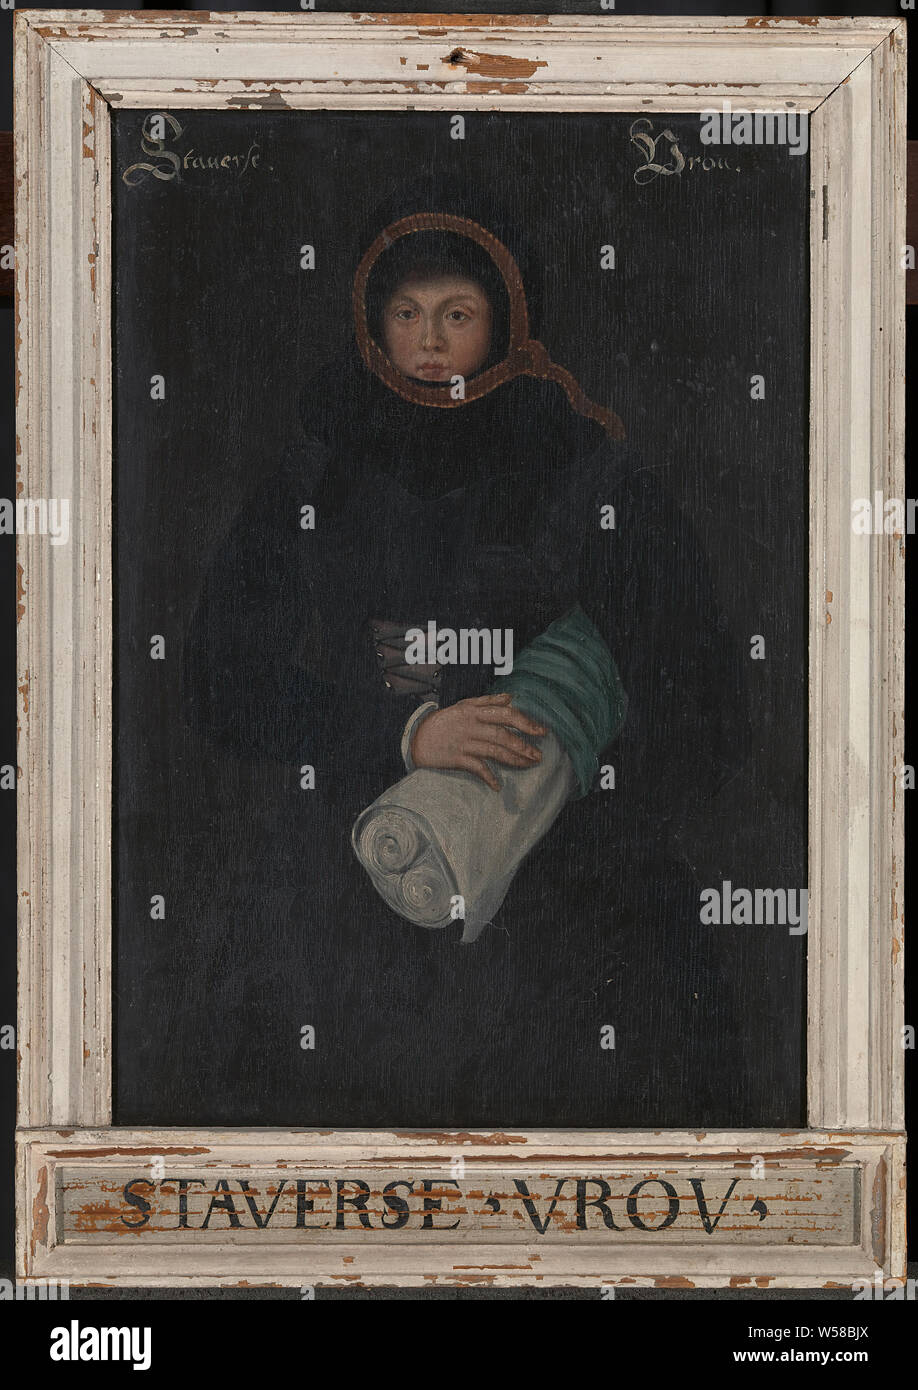 Bilderrahmen, h 53,2 cm x W 37,2 cm x T 3,8 cm, Staverse Vrou, alte Gemälde von einer Frau eine Rolle Stoff, Öl auf Leinwand, Ca. 16. jahrhundert Stockfoto